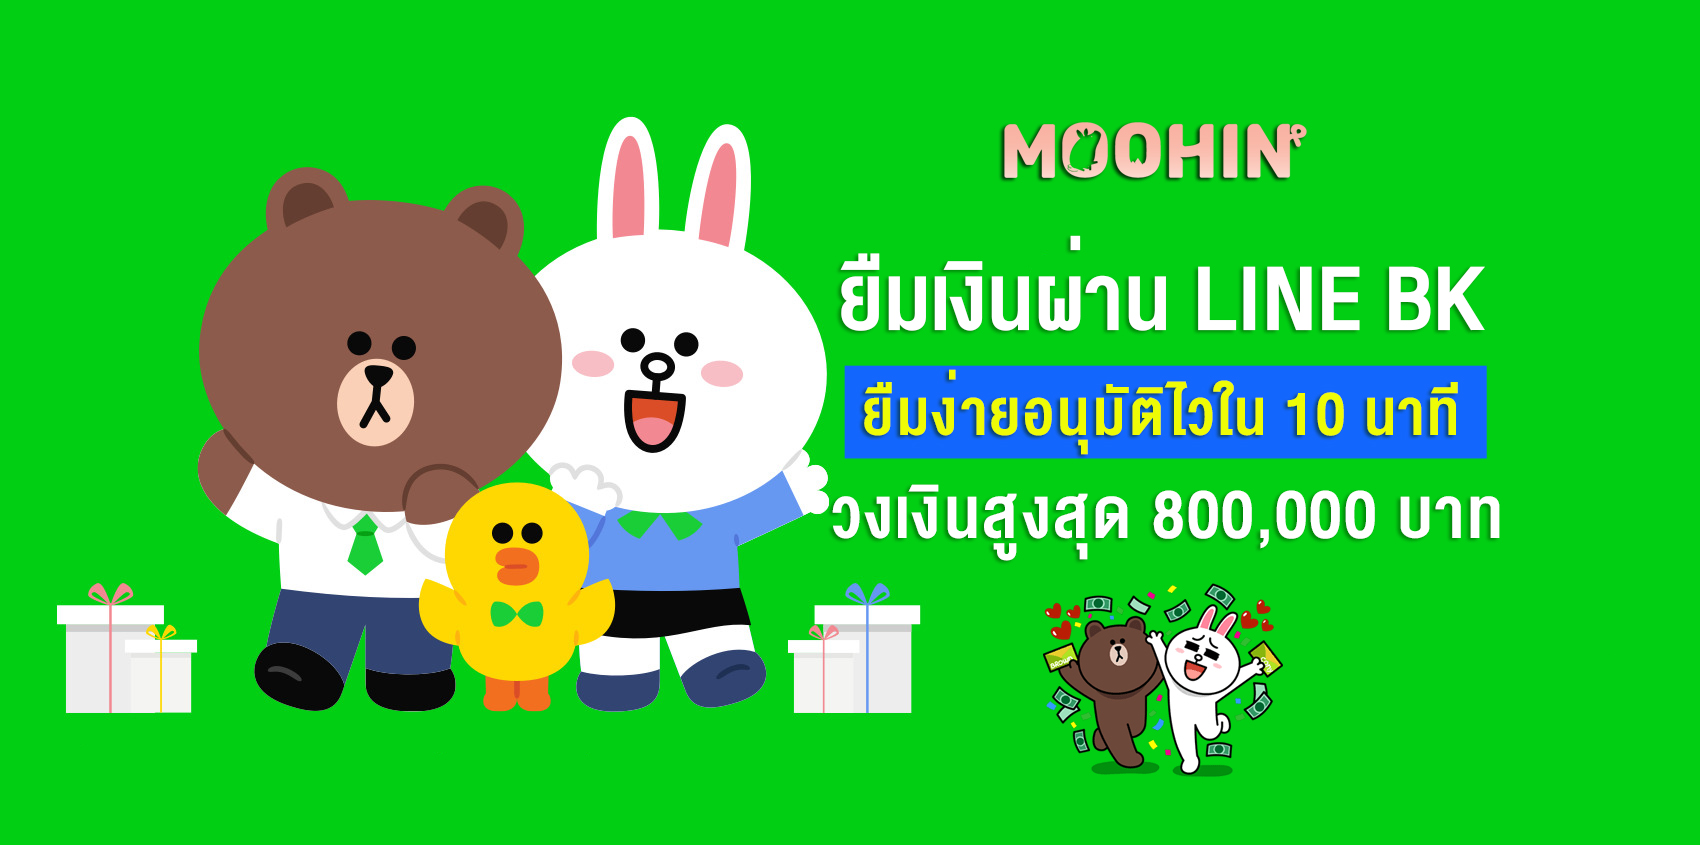 ยืมเงินผ่าน Line Bk ยืมง่ายอนุมัติไวใน 10 นาที วงเงินสูงสุด 800,000 บาท -  Moohin